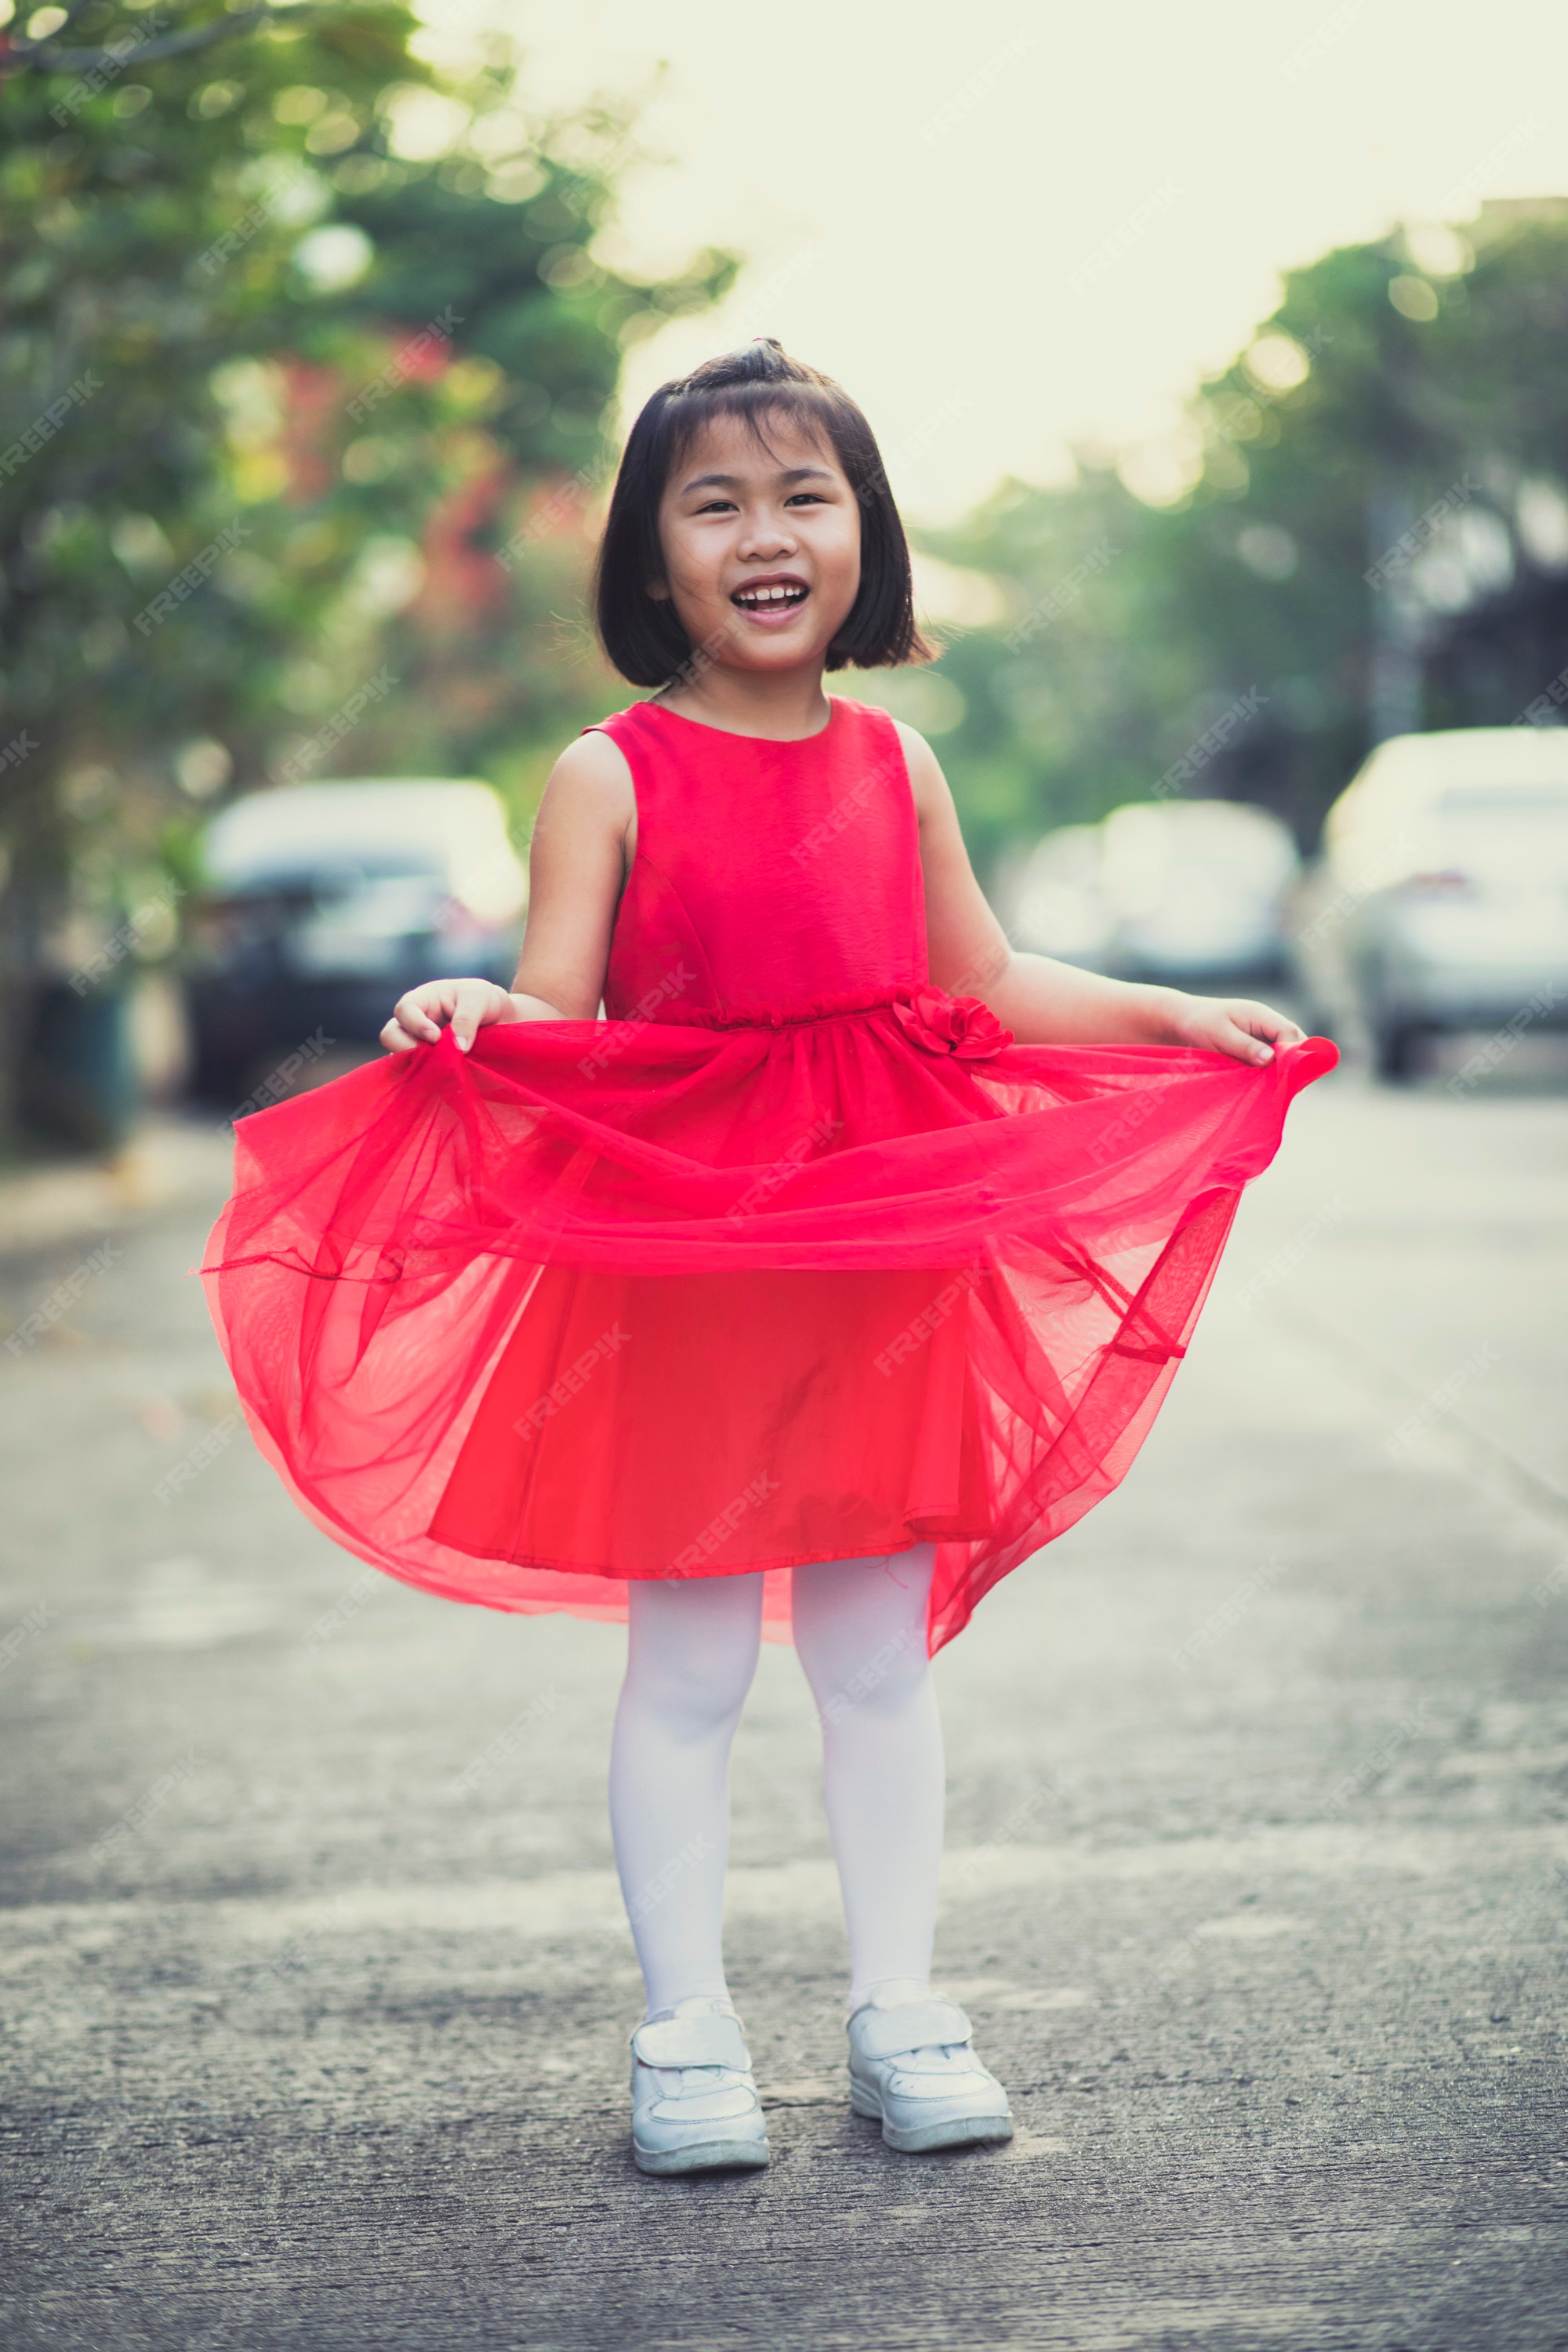 Asina niños niña vistiendo falda roja vestido sonriente cara felicidad | Foto Premium